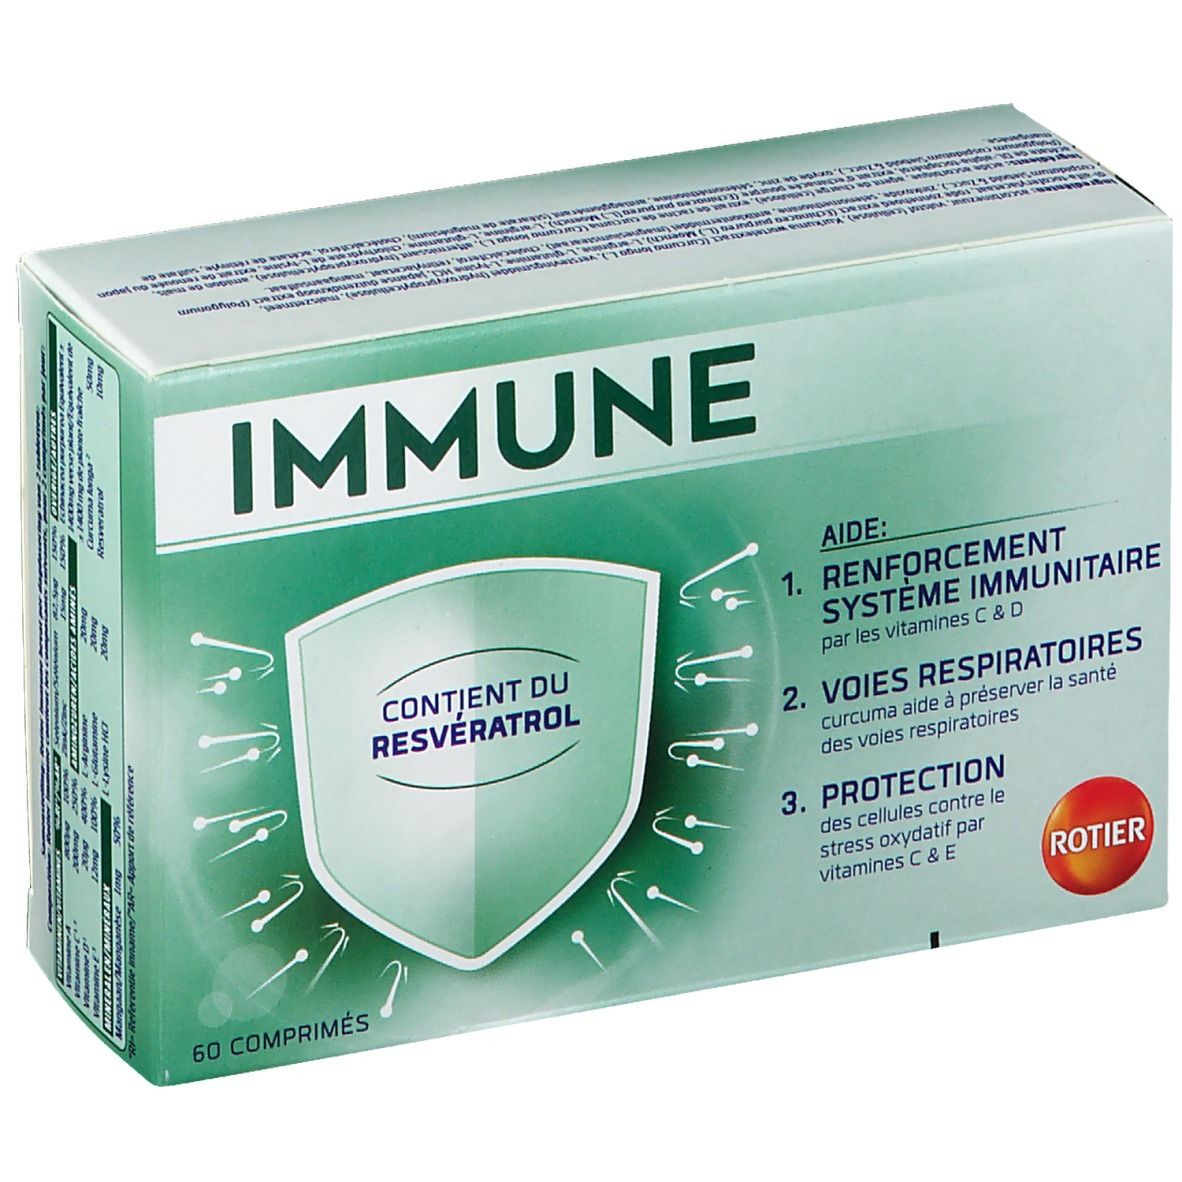 Rotier Immune - Système immunitaire, Voies respiratoires, Protection